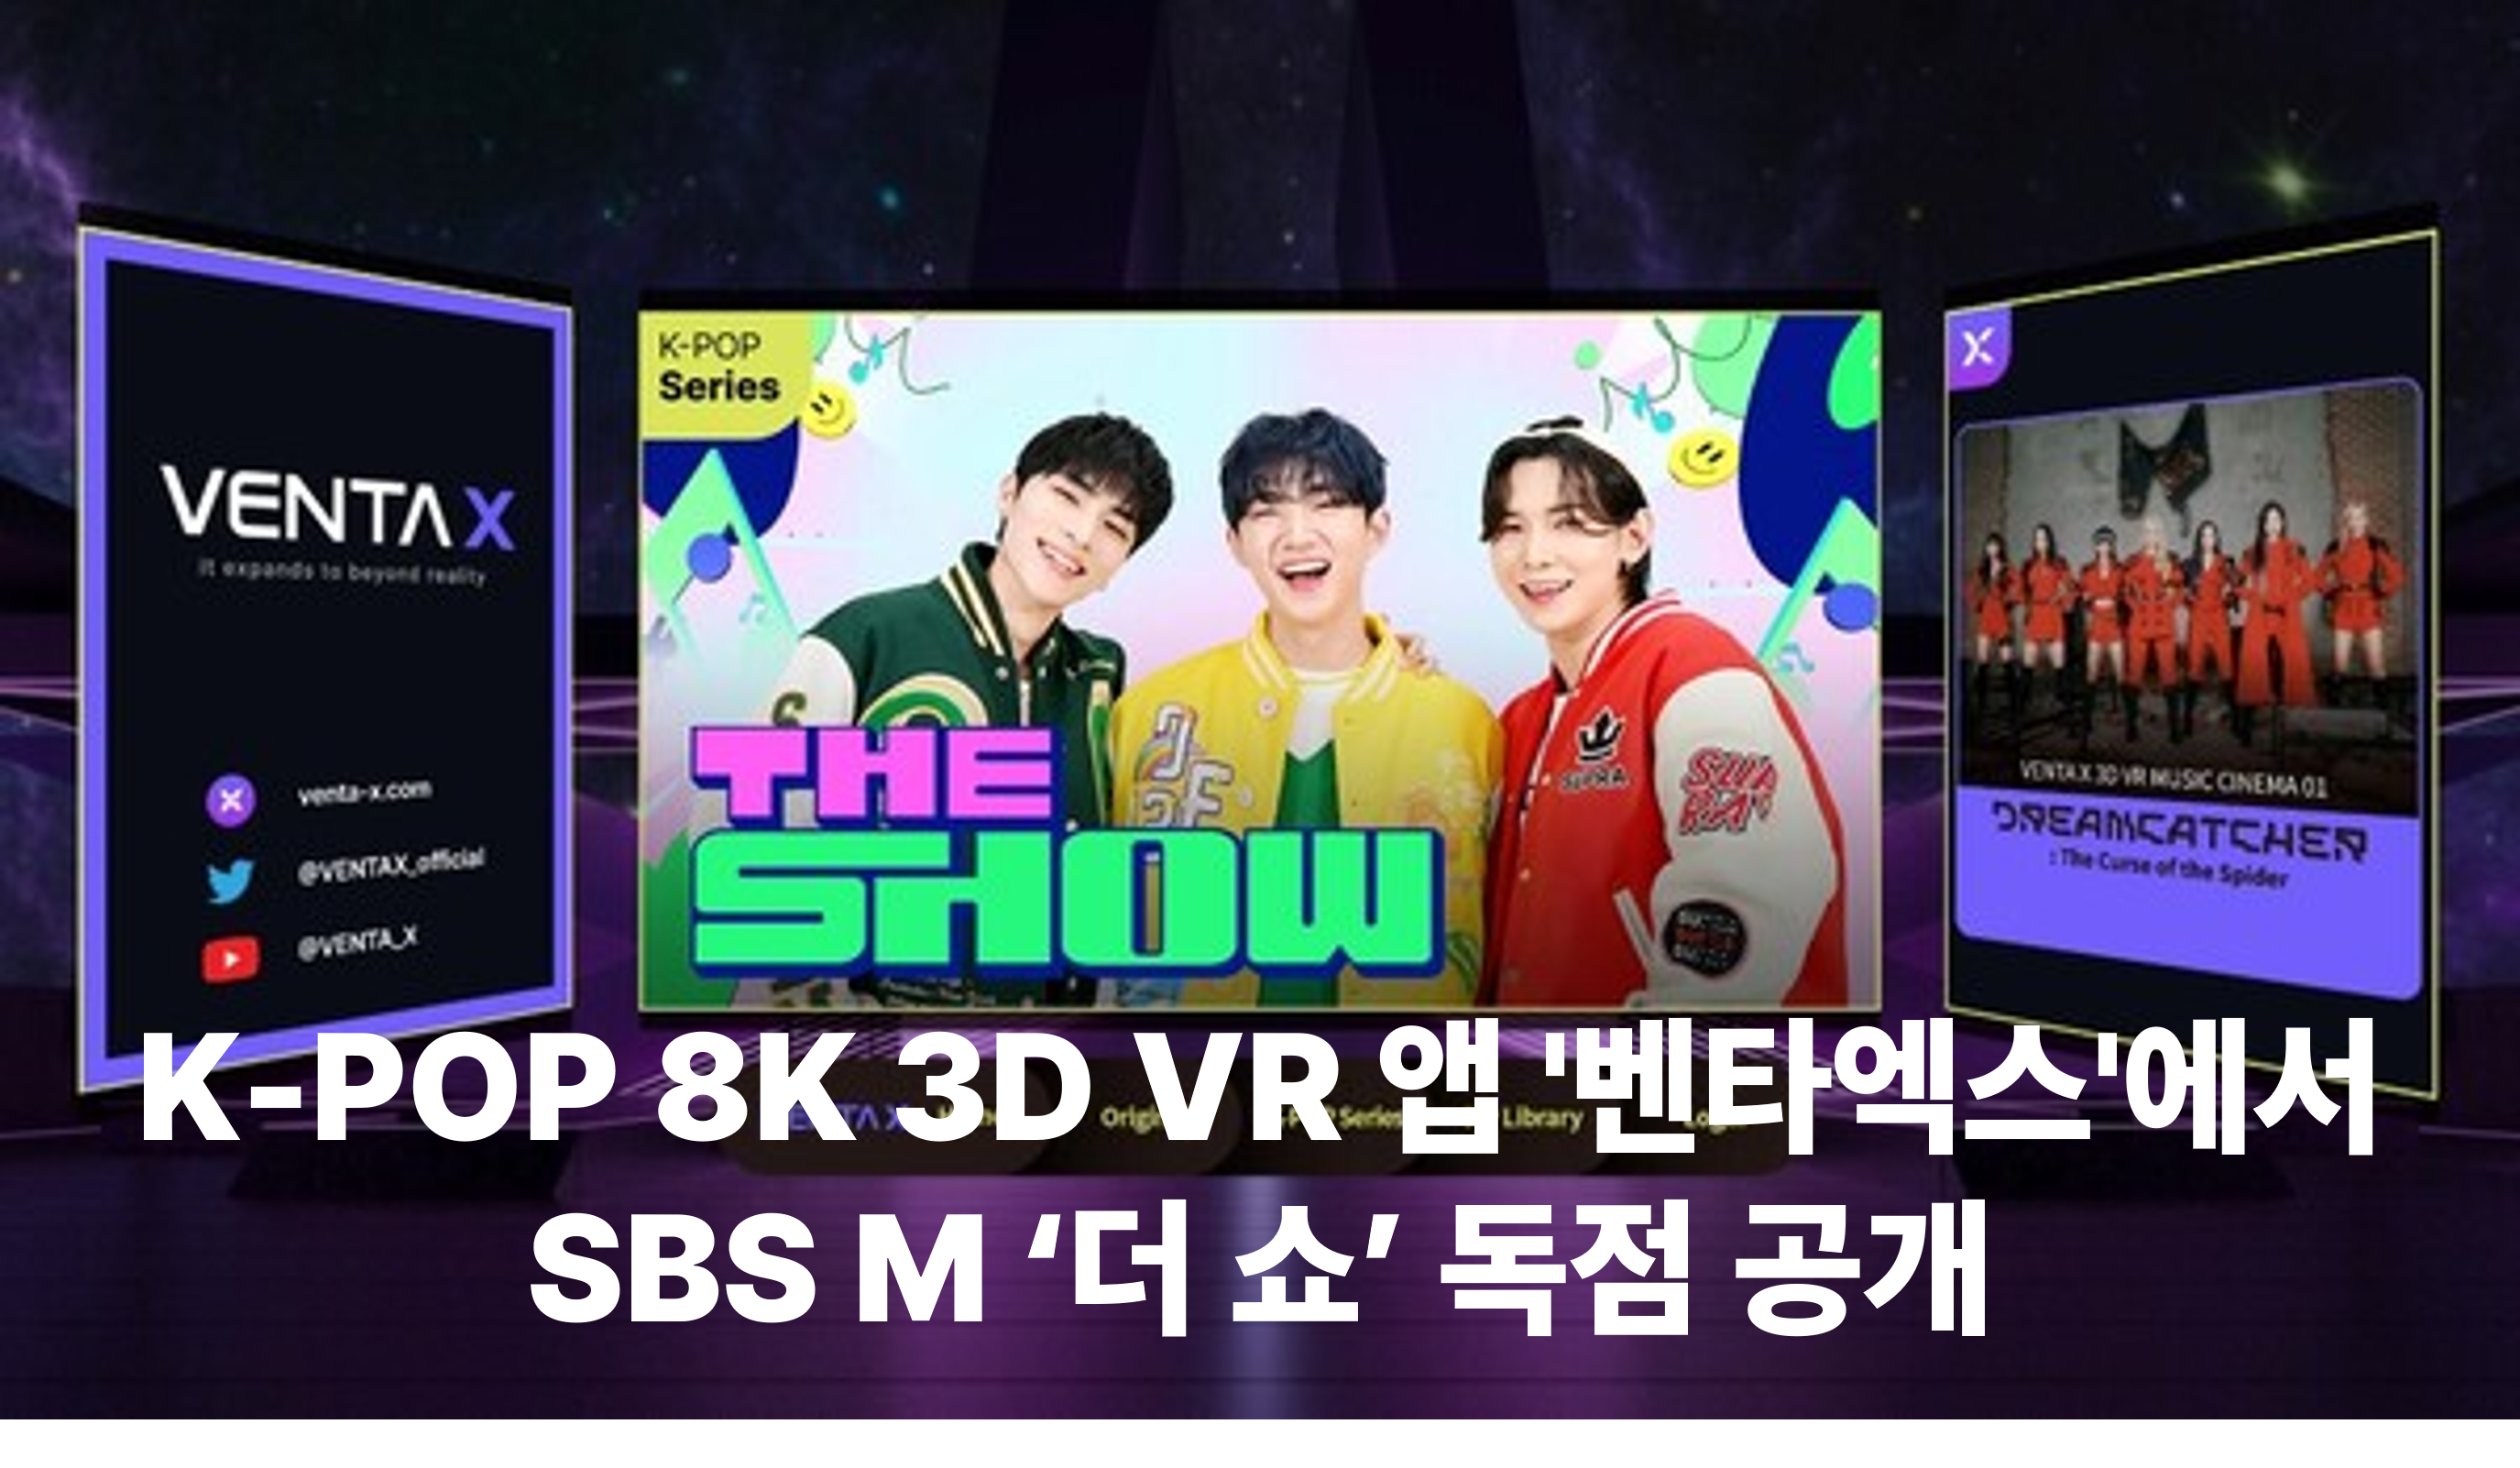 K-POP 8K 3D VR 앱 '벤타엑스'에서 SBS M ‘더 쇼’ 독점 공개